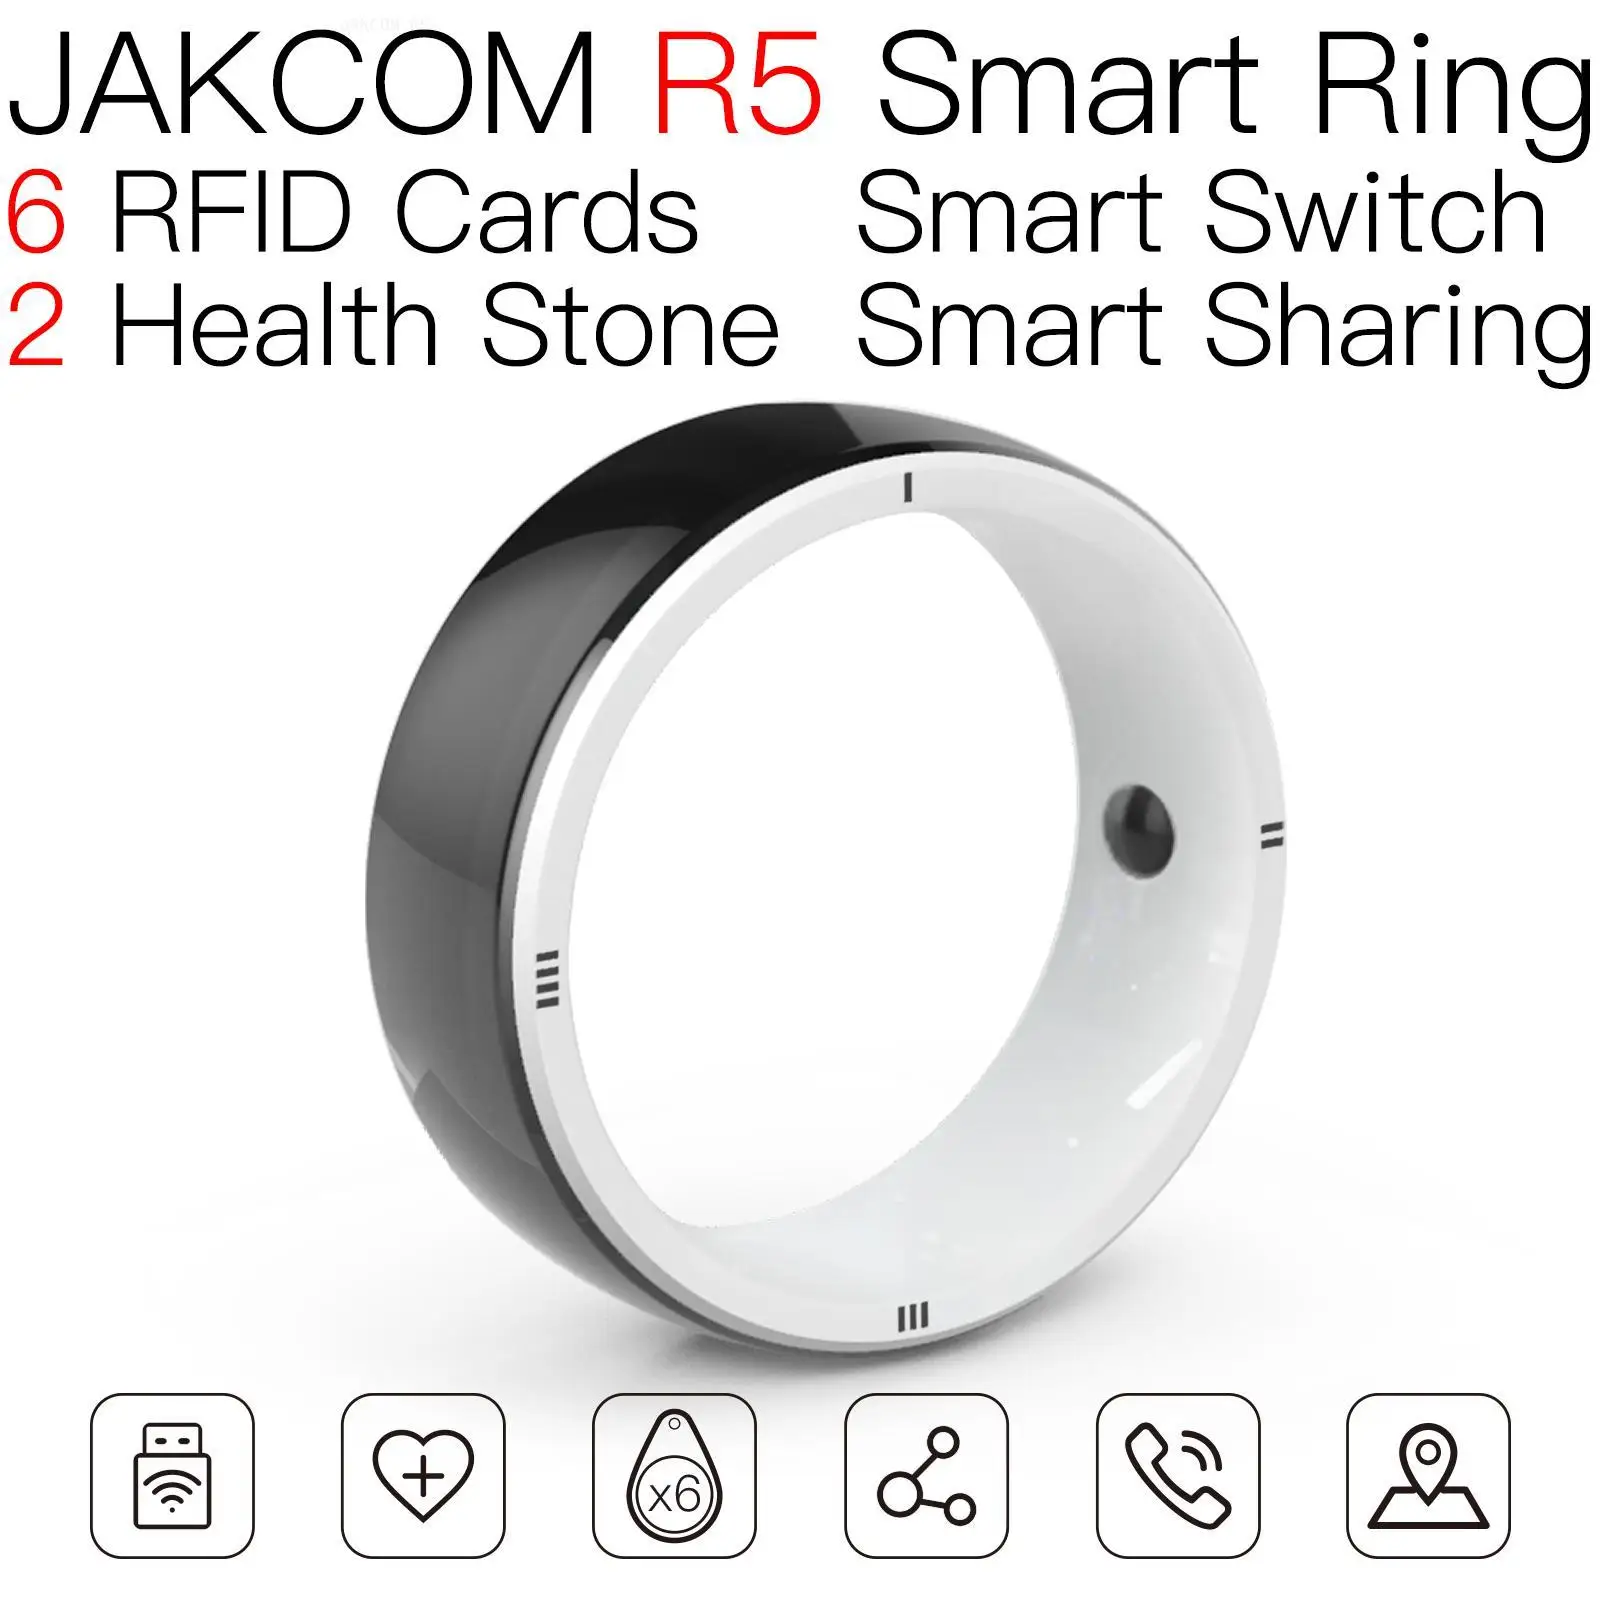 Умное кольцо JAKCOM R5, новее, чем карты, стандартное разрешение, офис 365, onedrive 5 ТБ, миниатюрное управление активами, лицензия